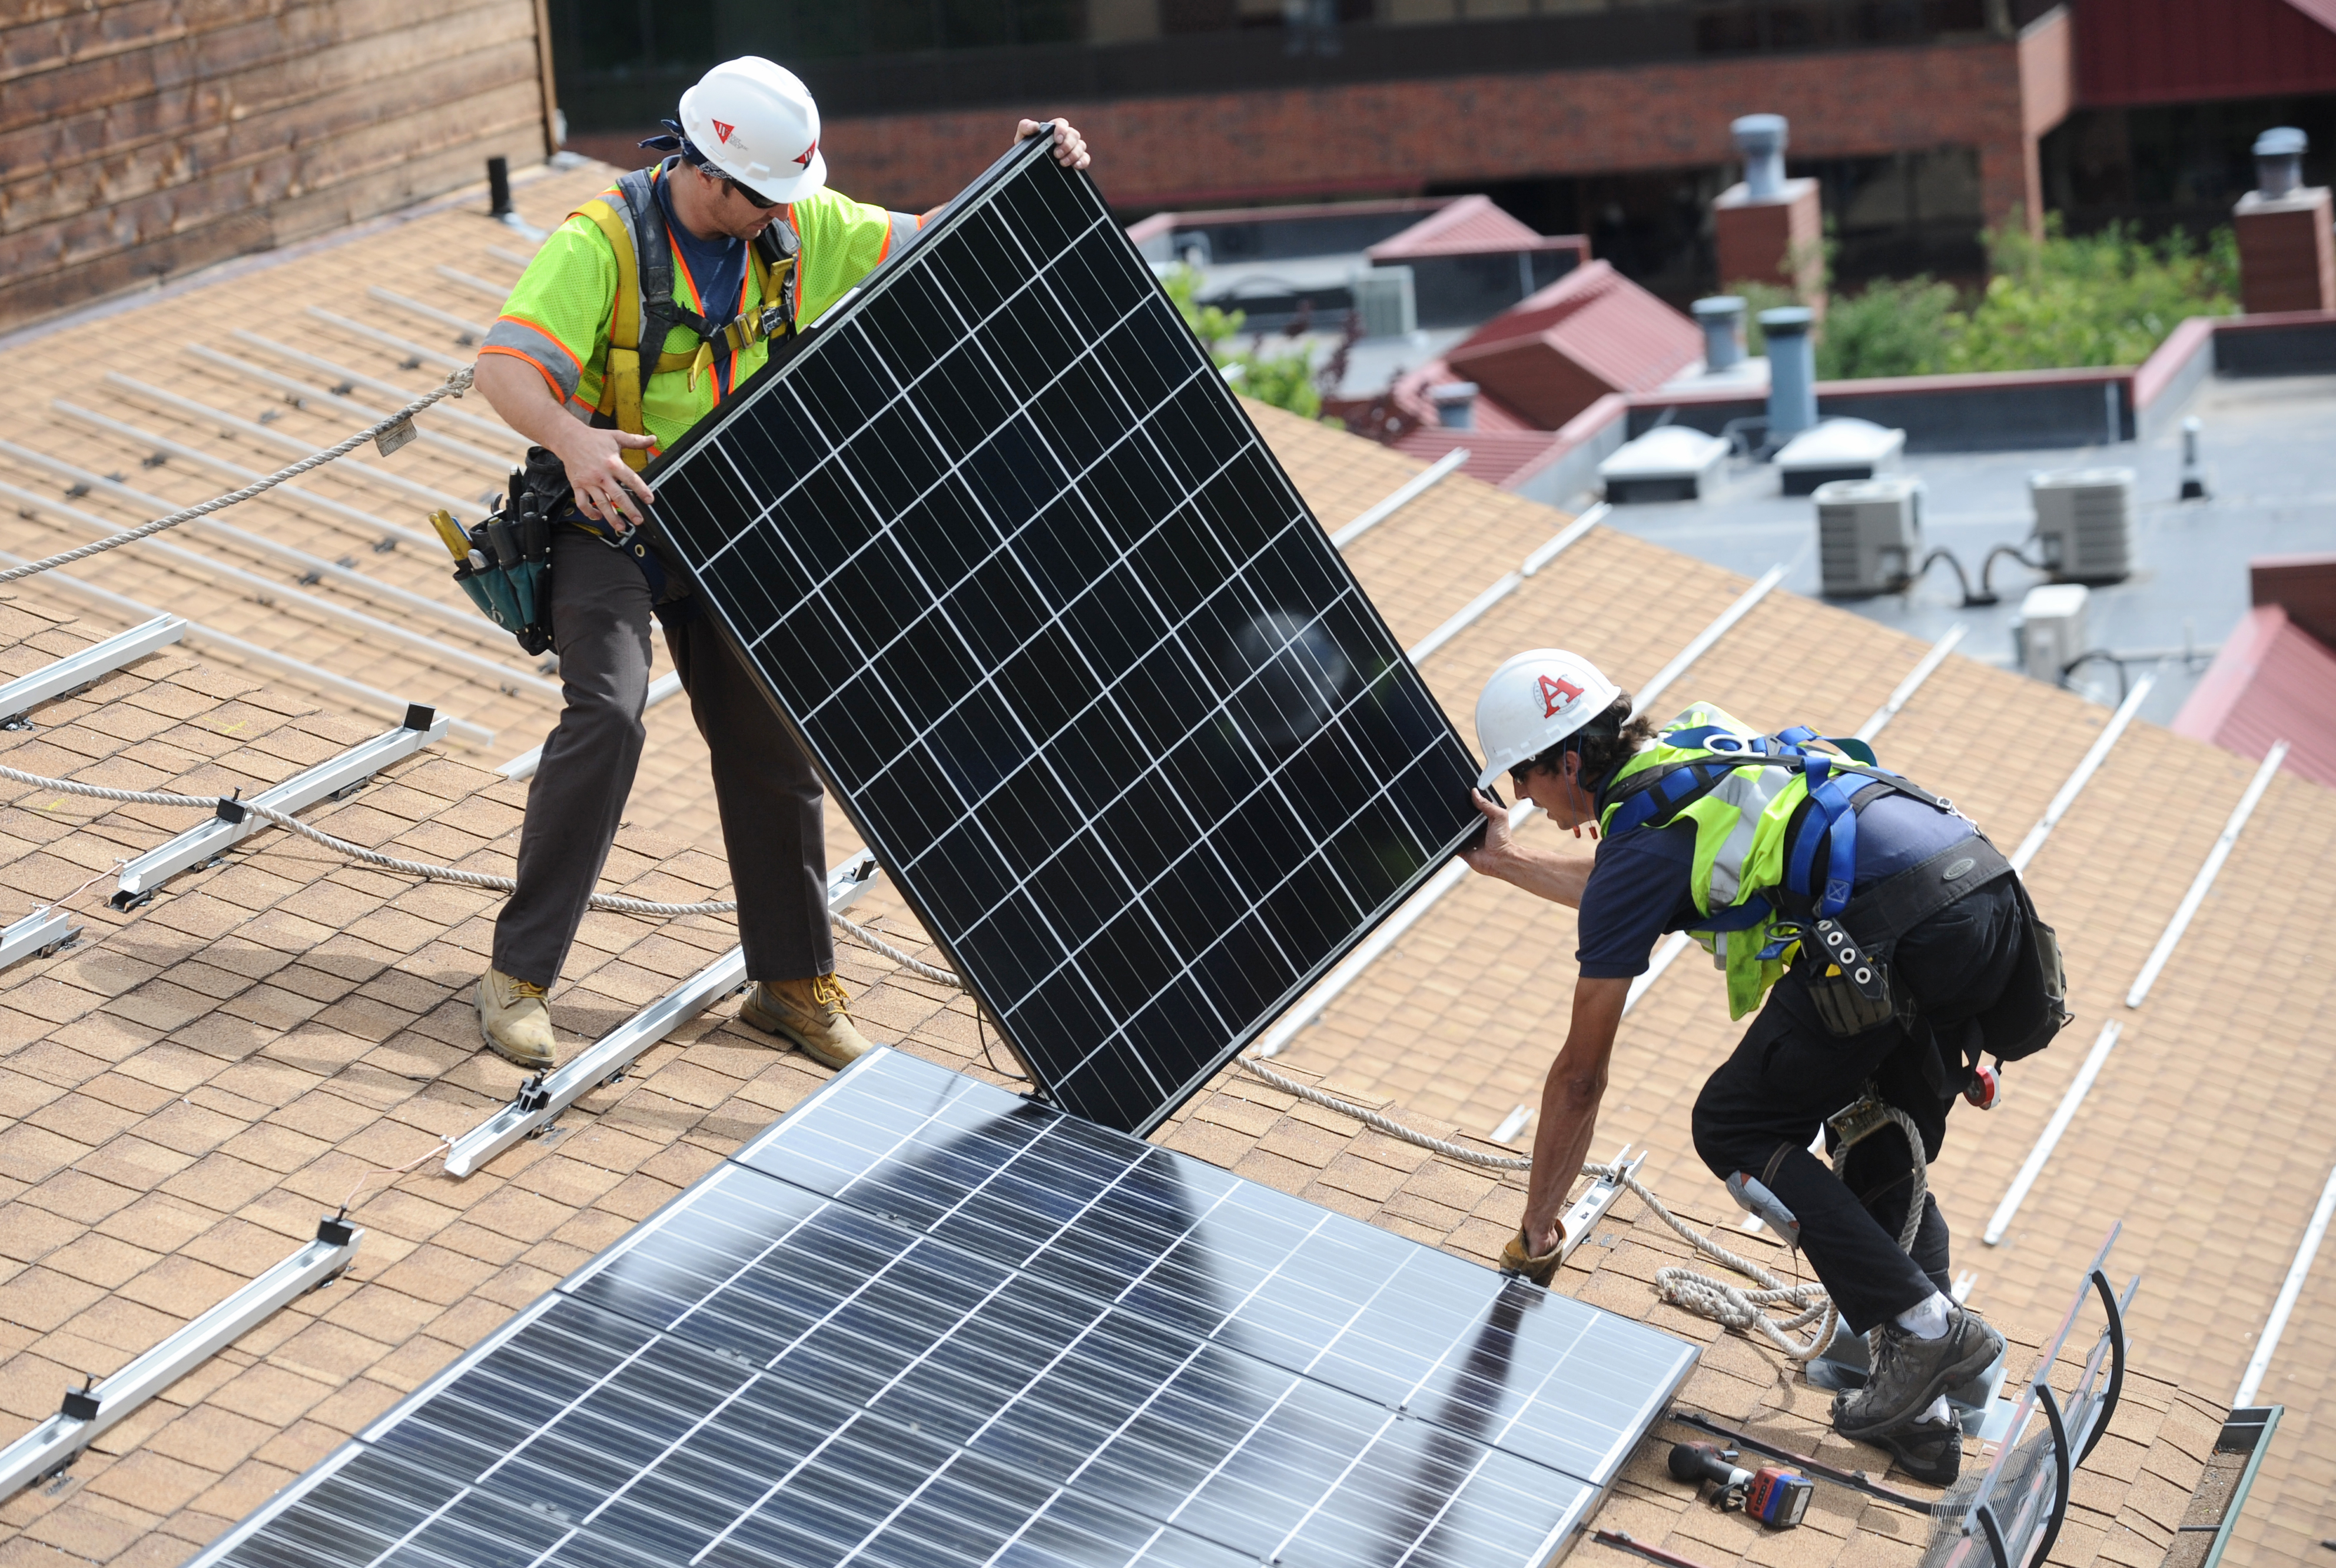 La tripulación instala paneles solares en un edificio de apartamentos.